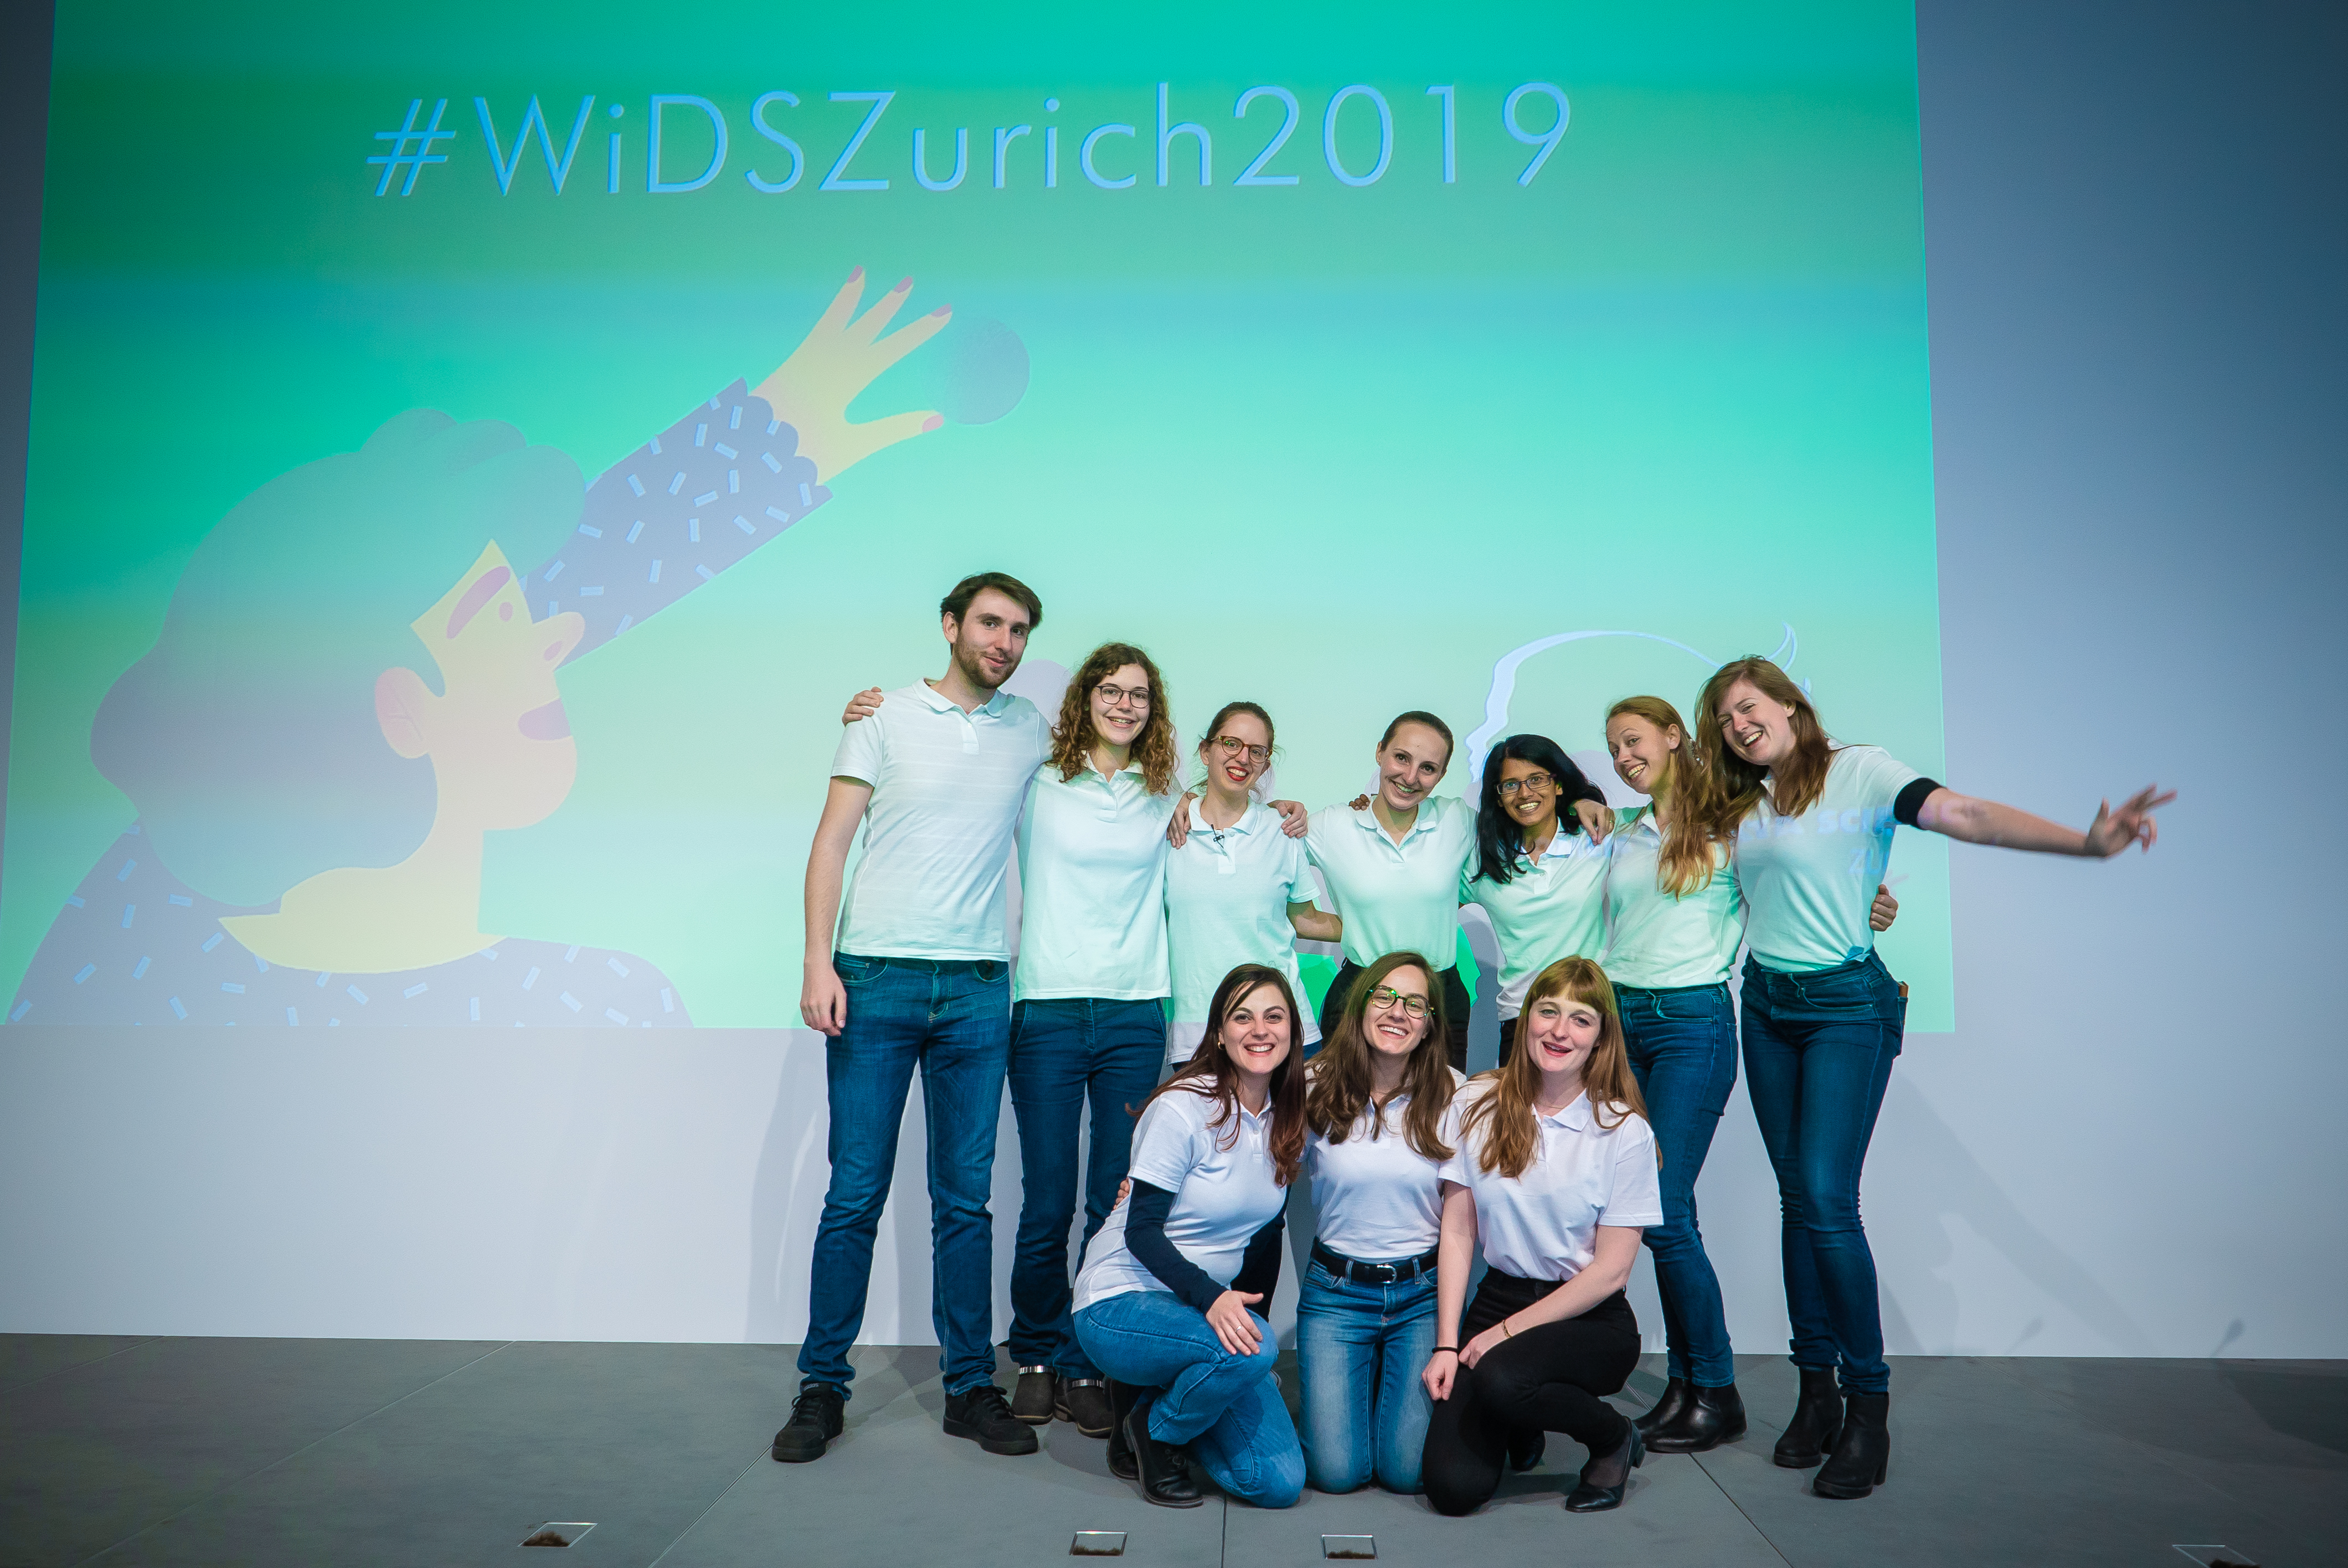 WiDS Zurich 2019 organizing team